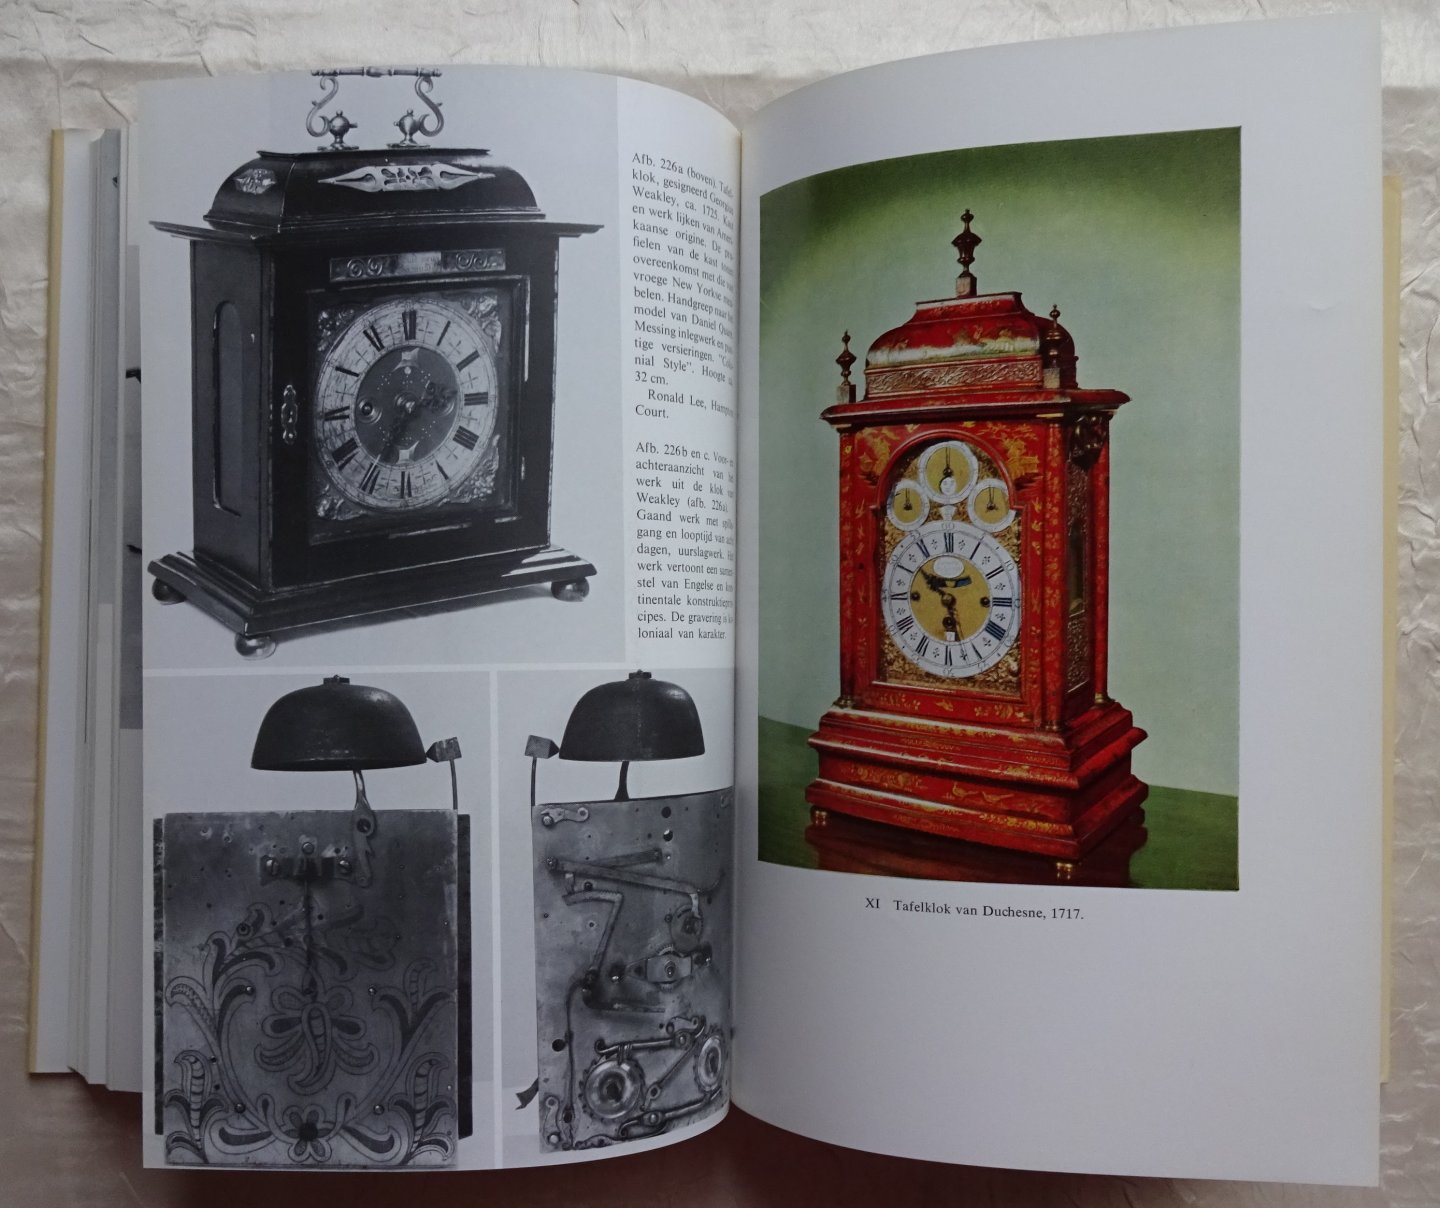 Basserman-Jordan / von Bertele - Oude Klokken. Het handboek voor verzamelaars en liefhebbers met ruim 700 afbeeldingen en 20 kleurenplaten. [ isbn 9060970446 ]